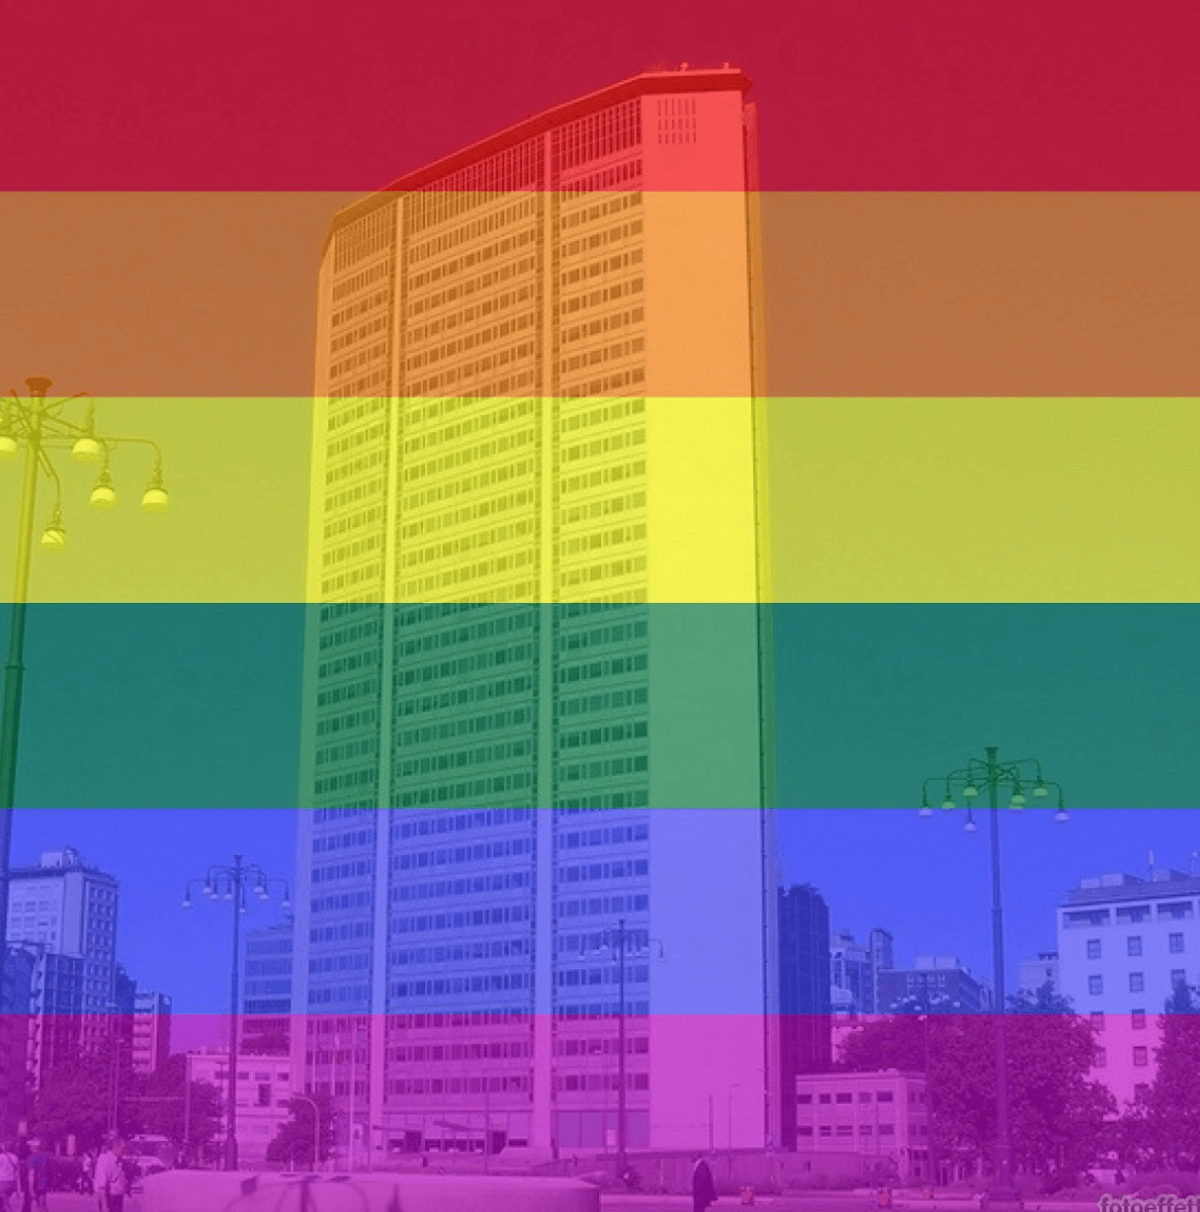 Milano Pride 2022, la Regione Lombardia ci sarà e il Pirellone diventerà arcobaleno - Pirellone arcobaleno 2 - Gay.it